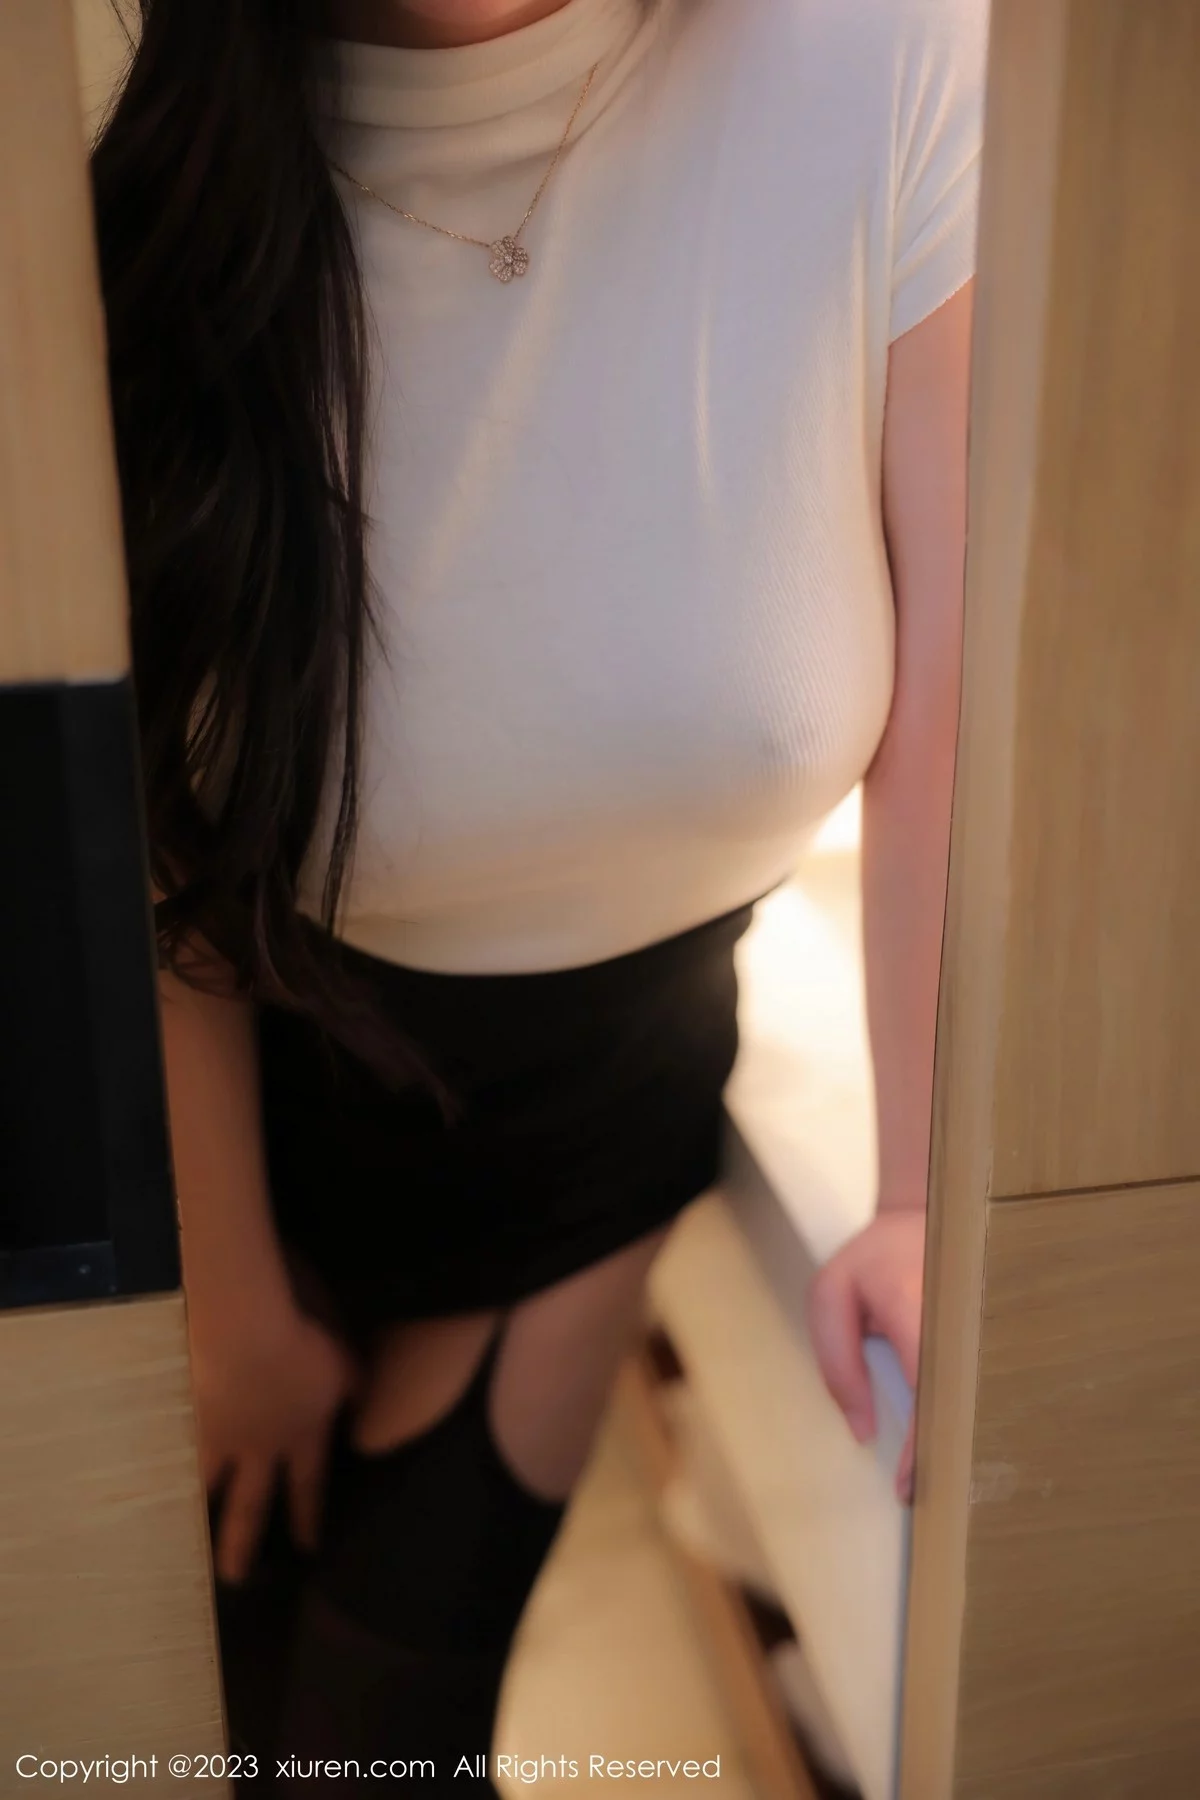 [XiuRen秀人网]第6394期_模特林珊珊白色轻透上衣配黑短裙魅惑黑丝秀曼妙身姿迷人写真103P